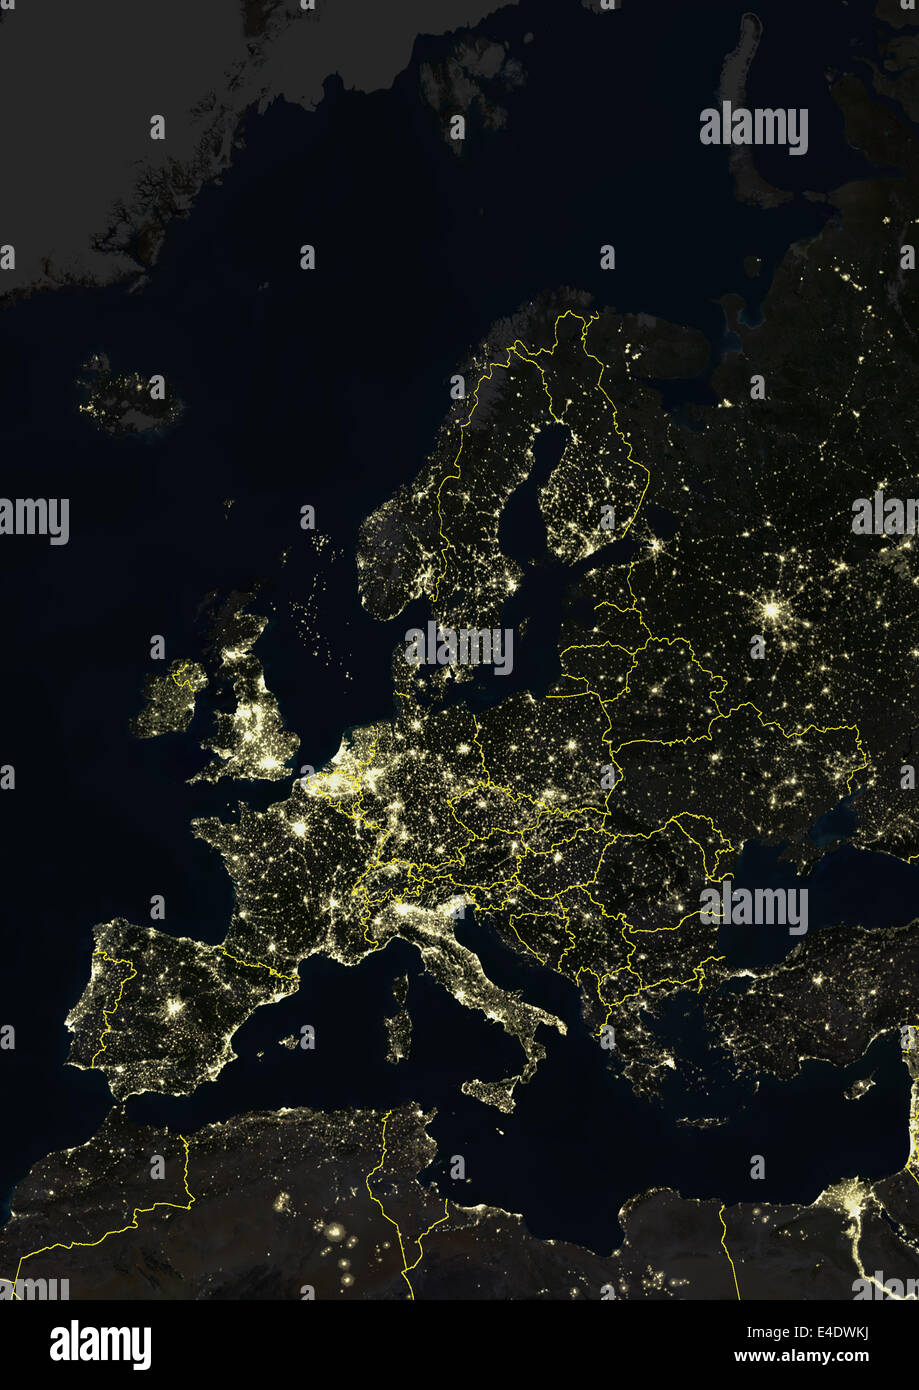 L'Europe en soirée avec des frontières du pays, True Color Image satellite. La couleur vraie image satellite de l'Europe dans la nuit avec le pays b Banque D'Images